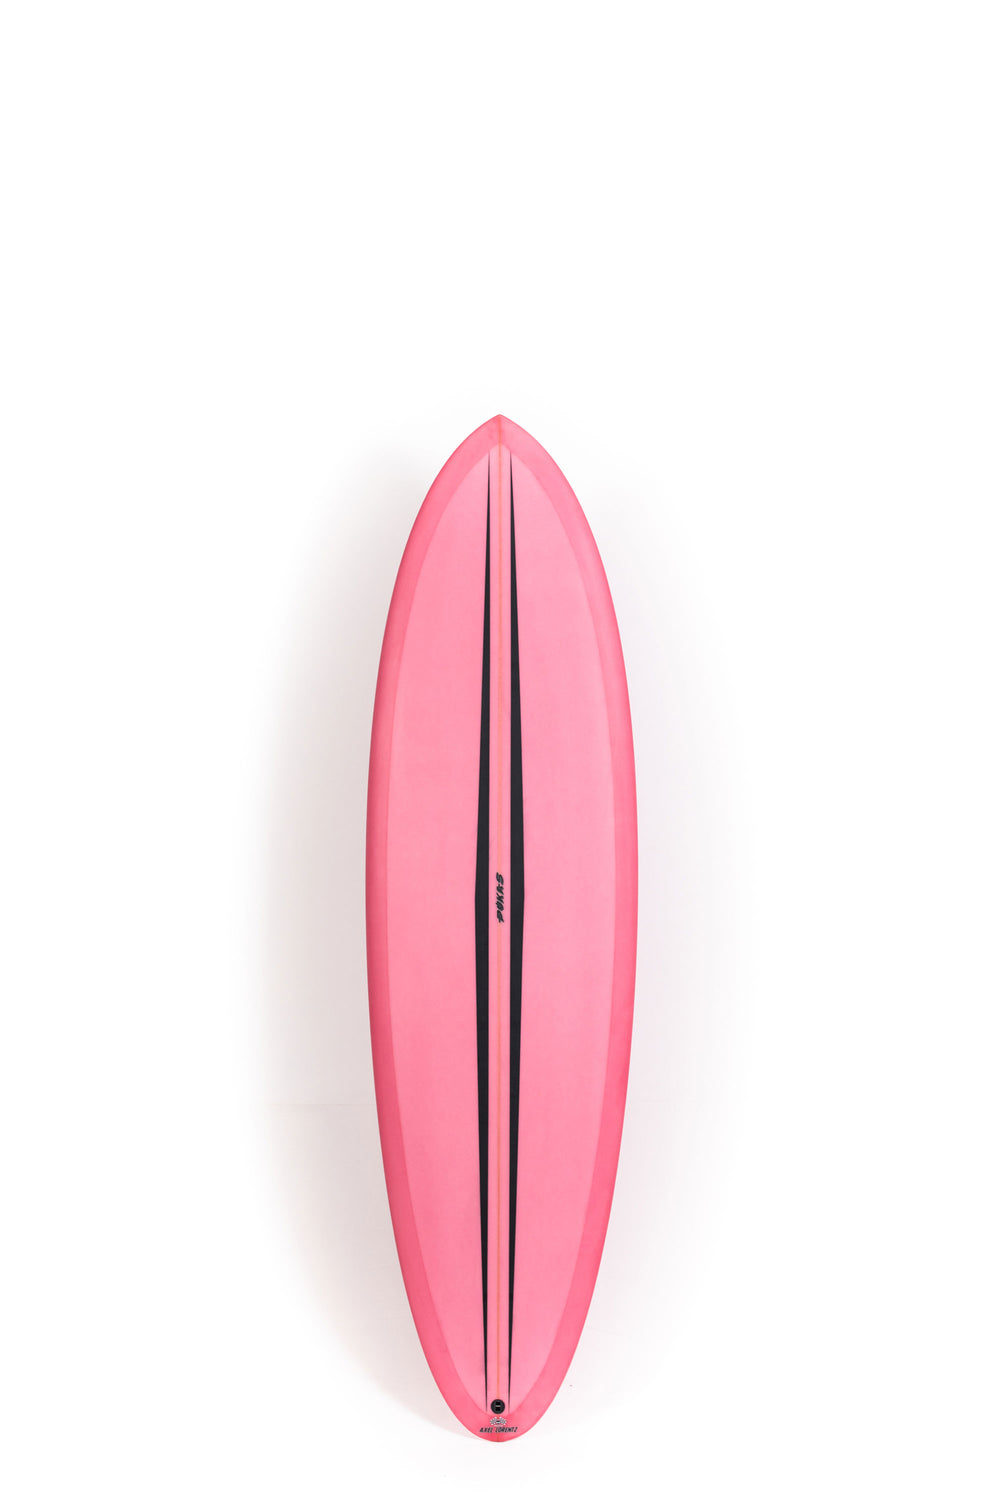 Pukas Surf Shop - Pukas Surfboard - LA CÔTE by Axel Lorentz - 6'6